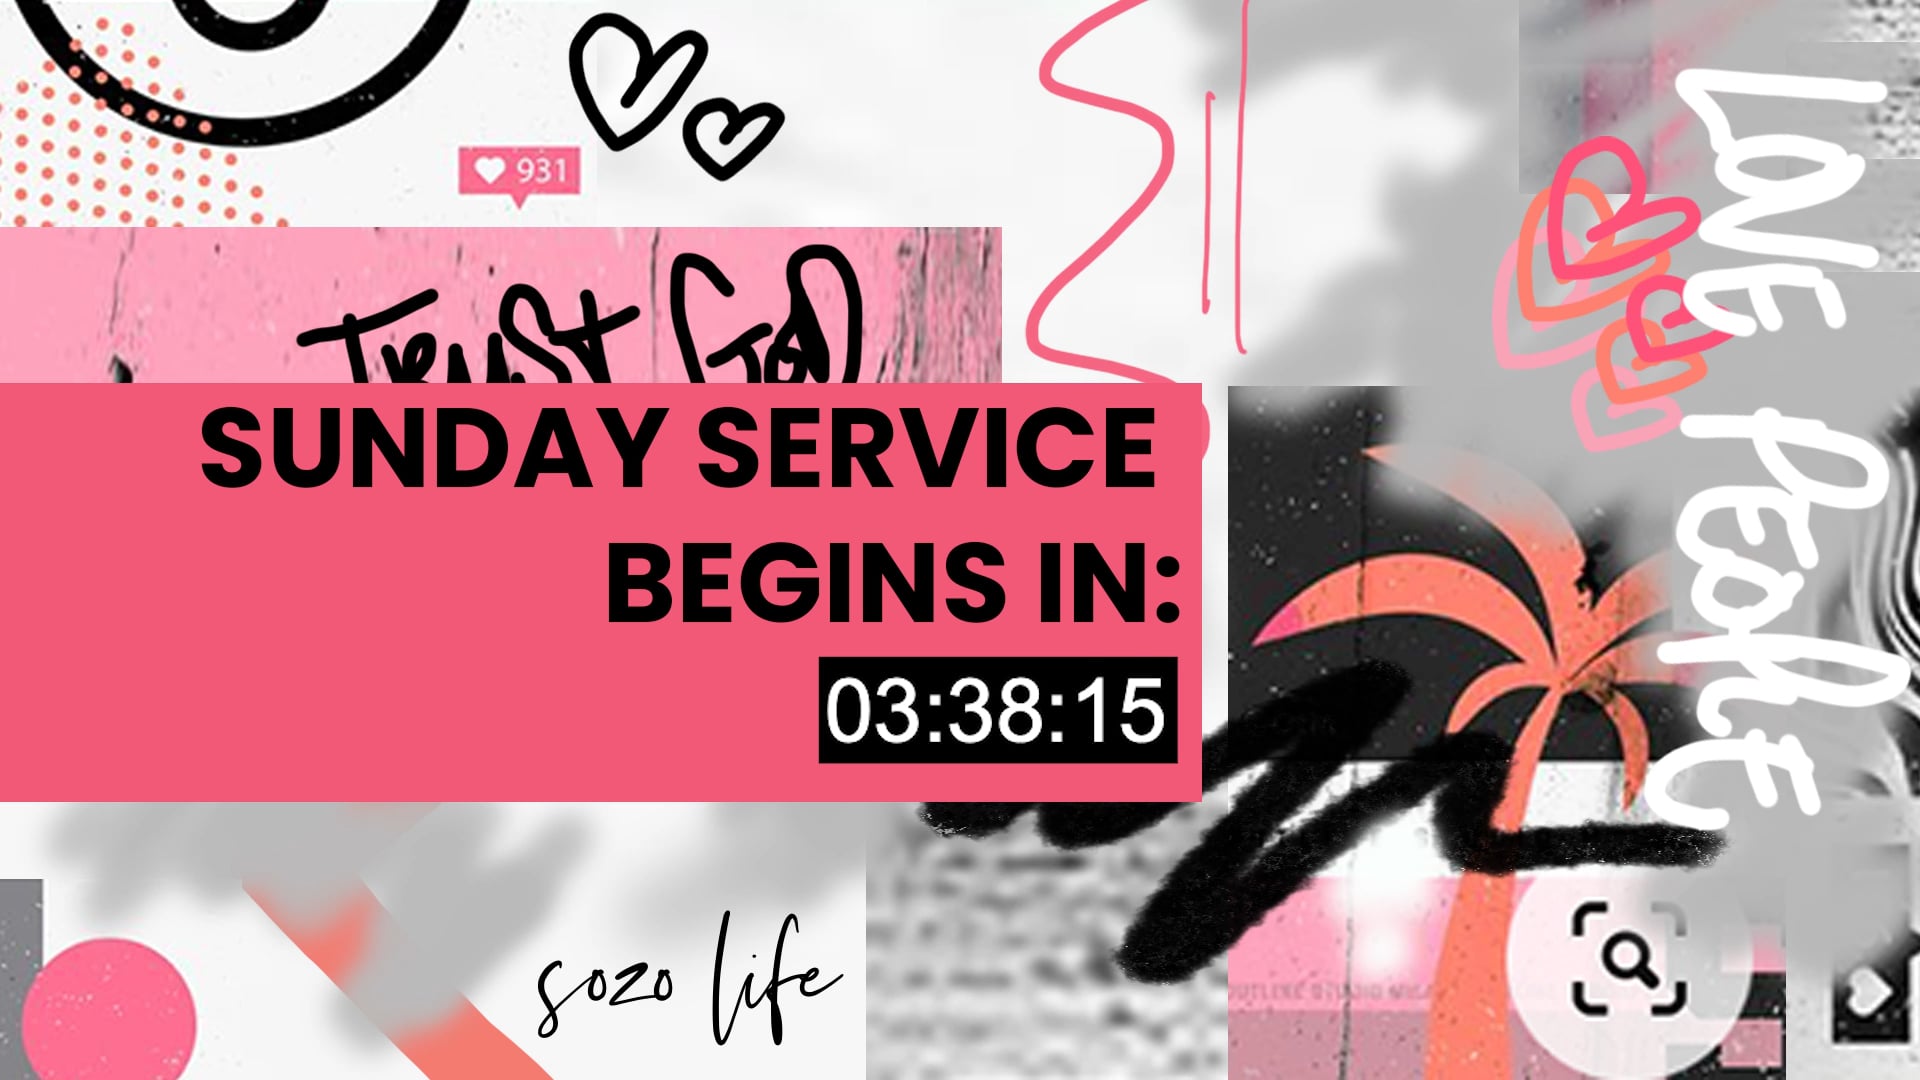 SOZO LIFE - Sunday Service 11.07.2020.mp4